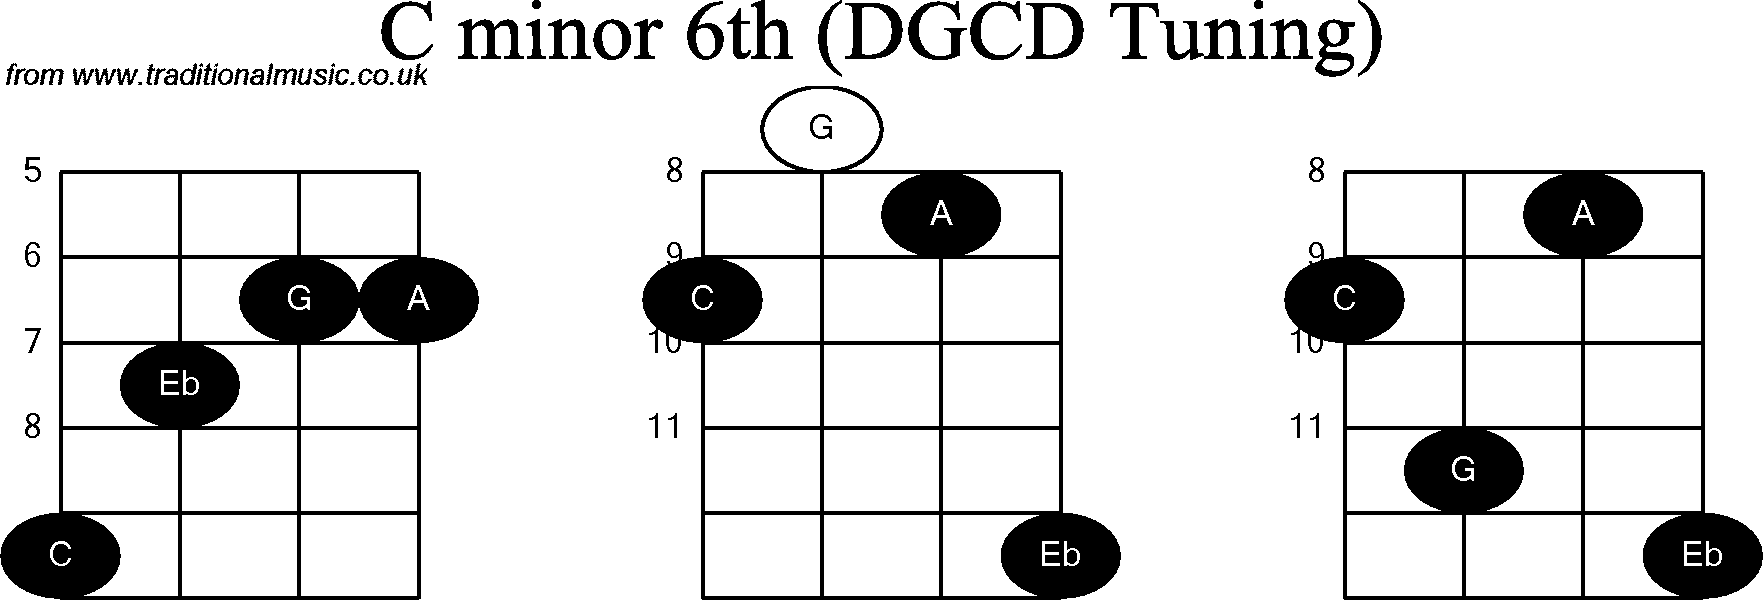 Chord diagrams for Banjo(G Modal) C Minor6th